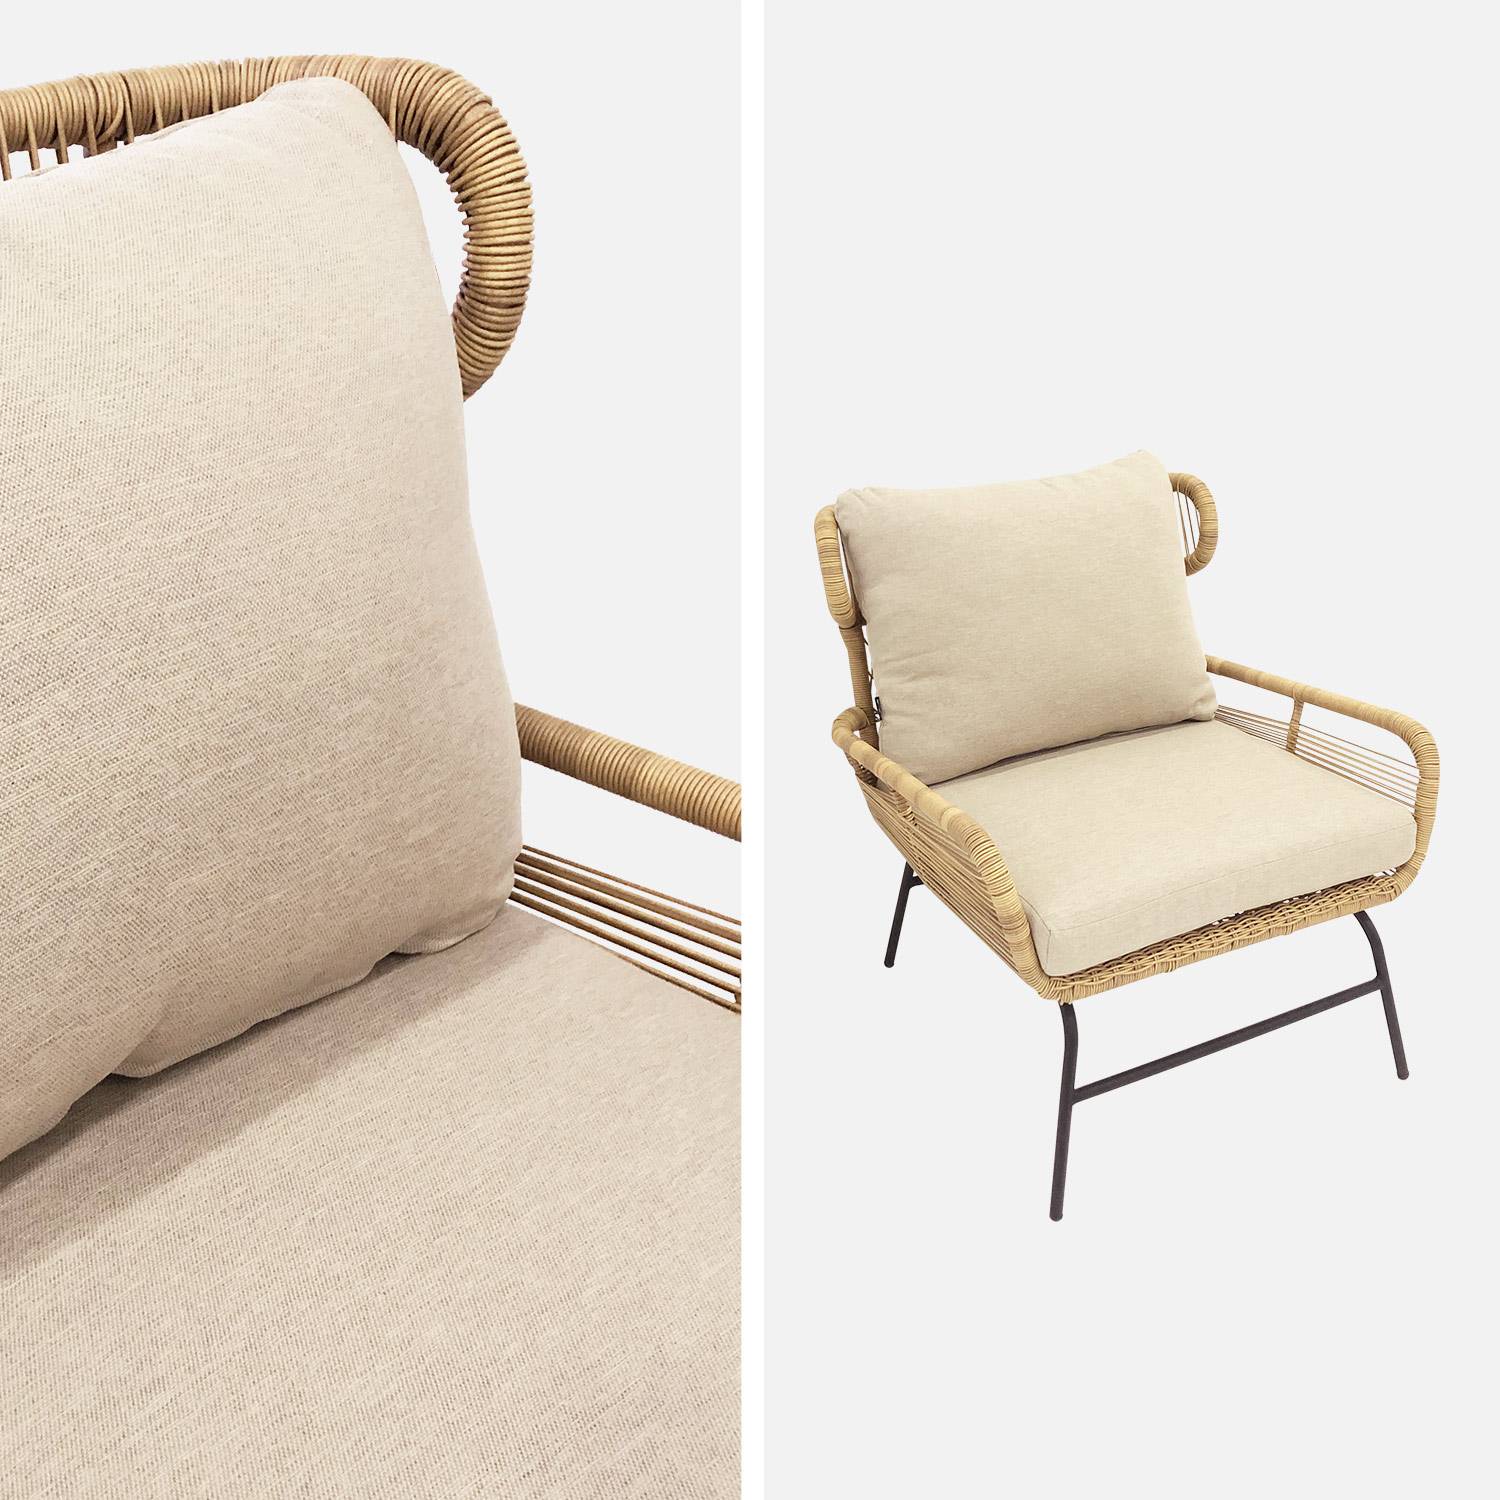 BALI 4-zits loungeset - 2-zits bankstel en 2 fauteuils met 1 bijzettafel, geweven rotan-effect wicker, beige kussens Photo5